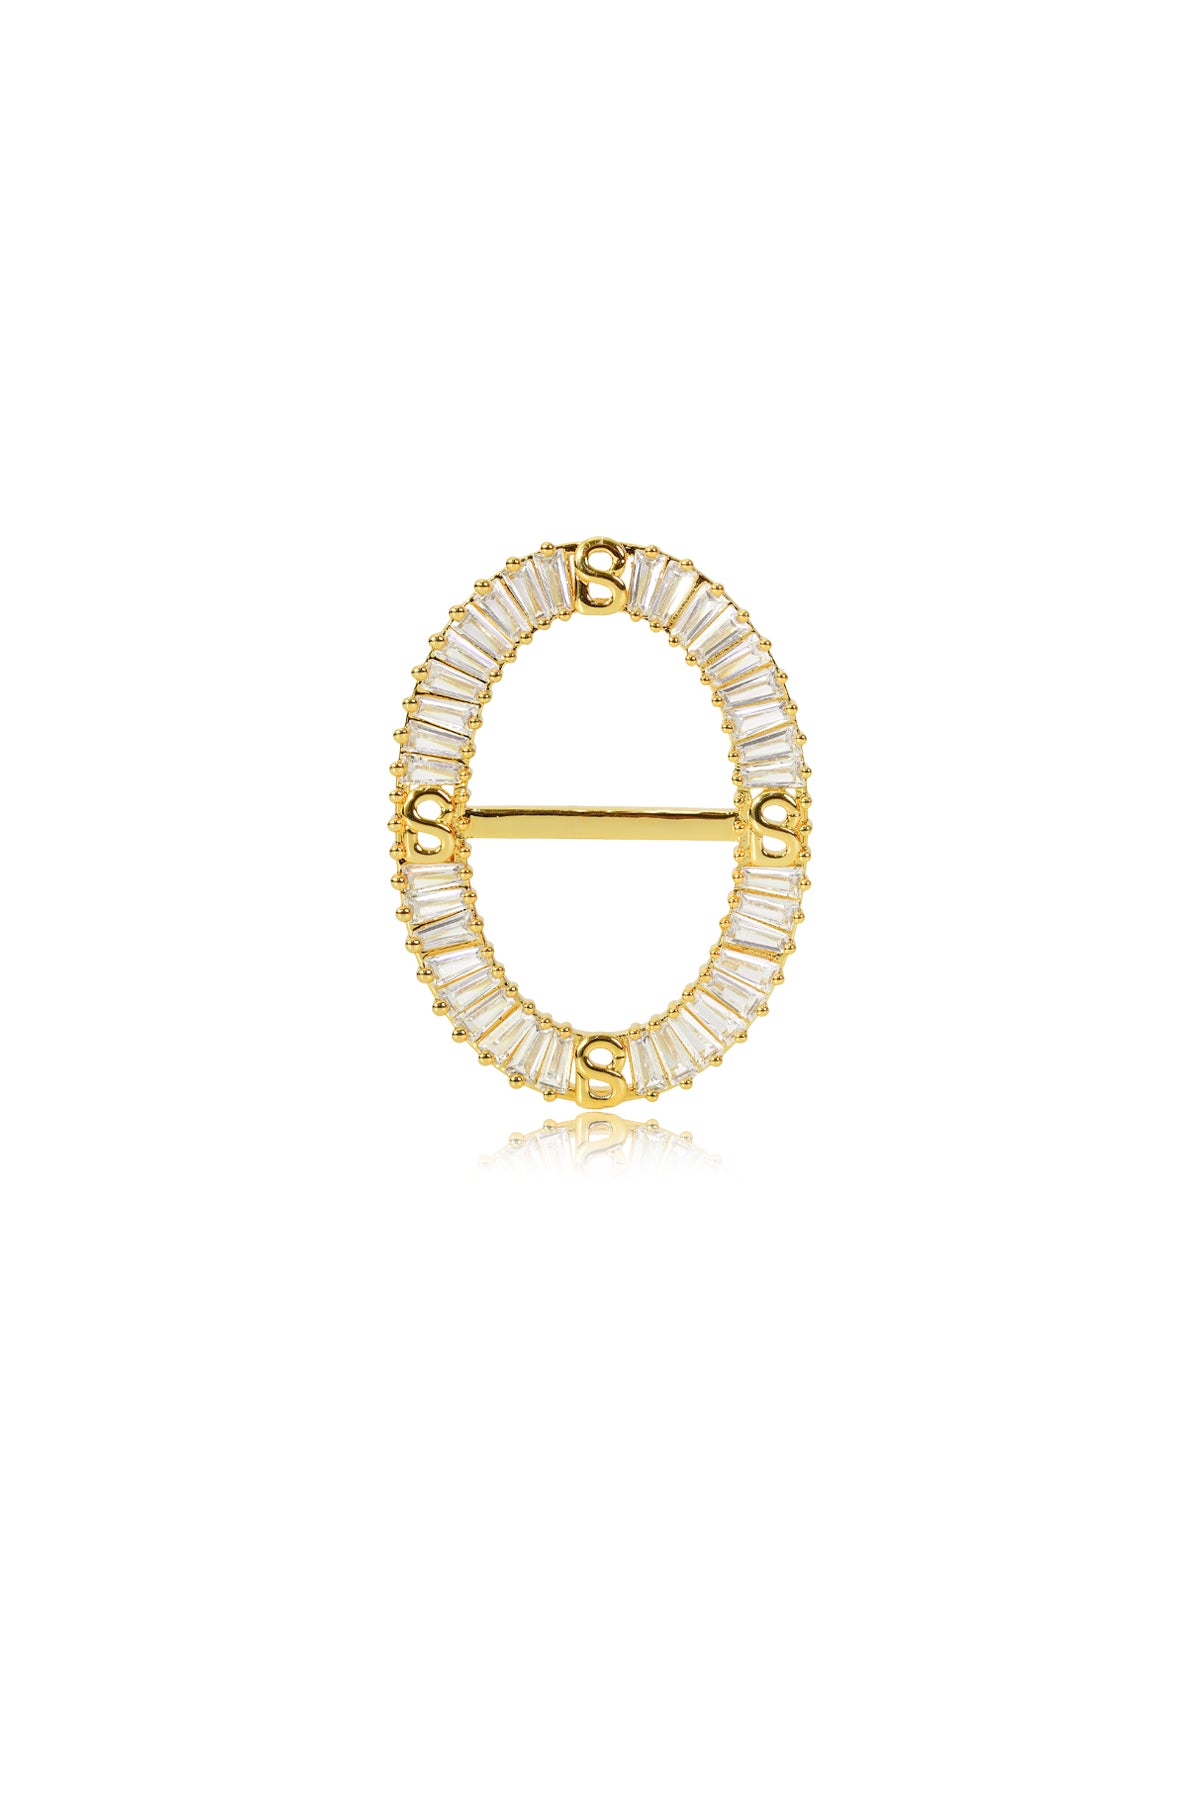 Lavish Oval Ring Brooch - Gold